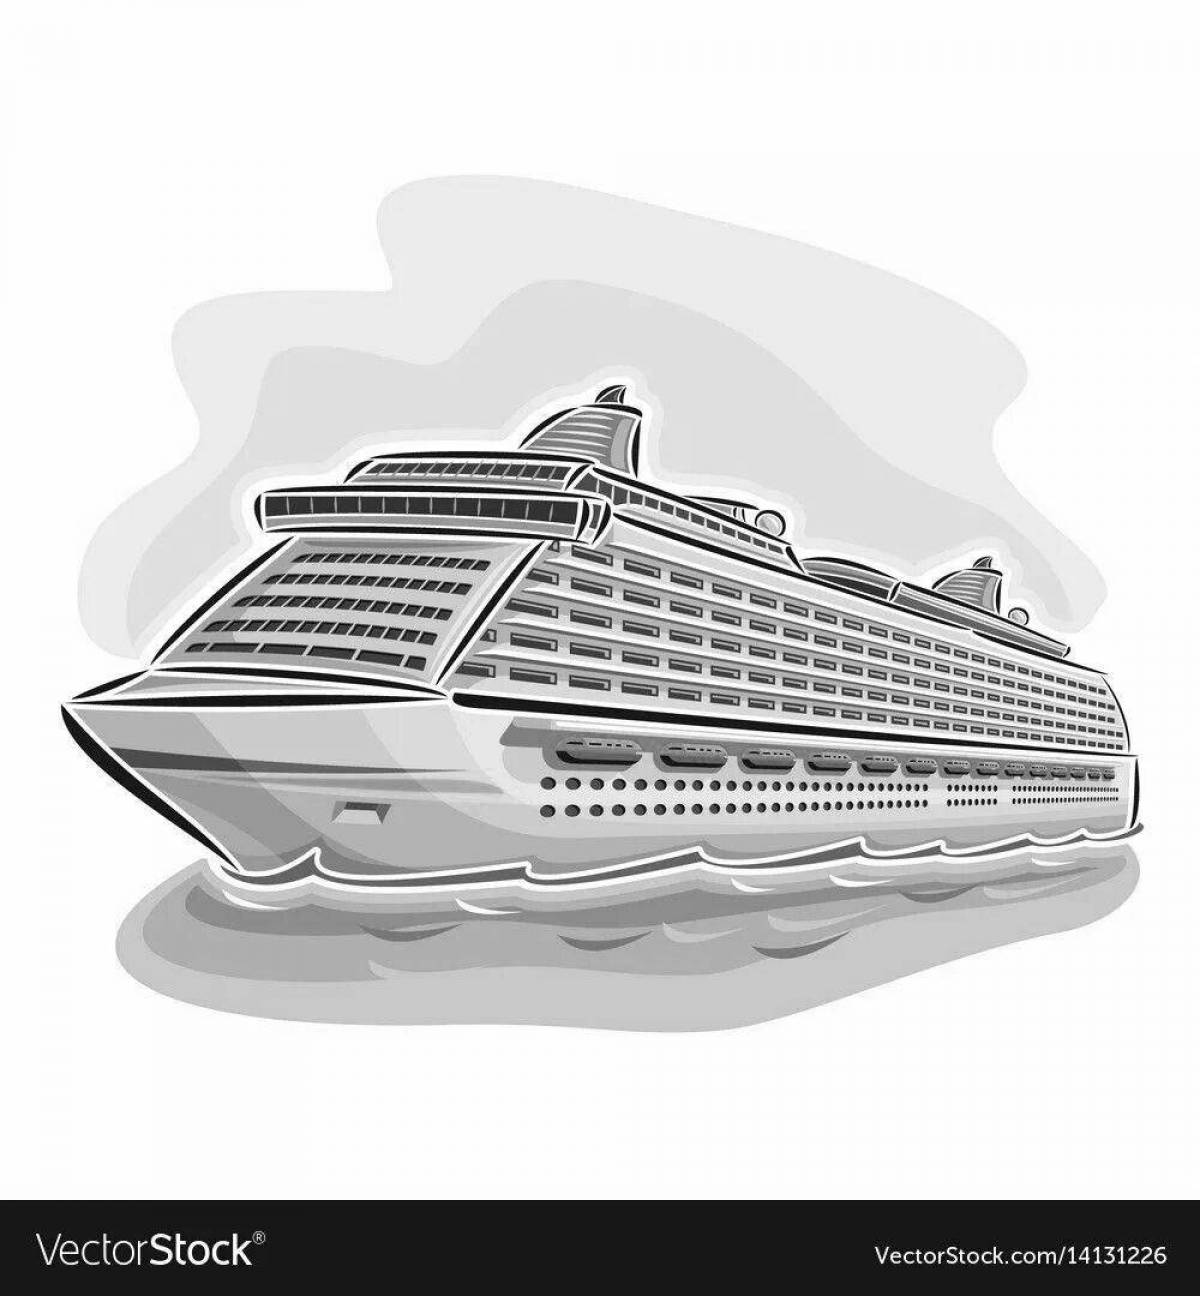 Violent passenger ship coloring page